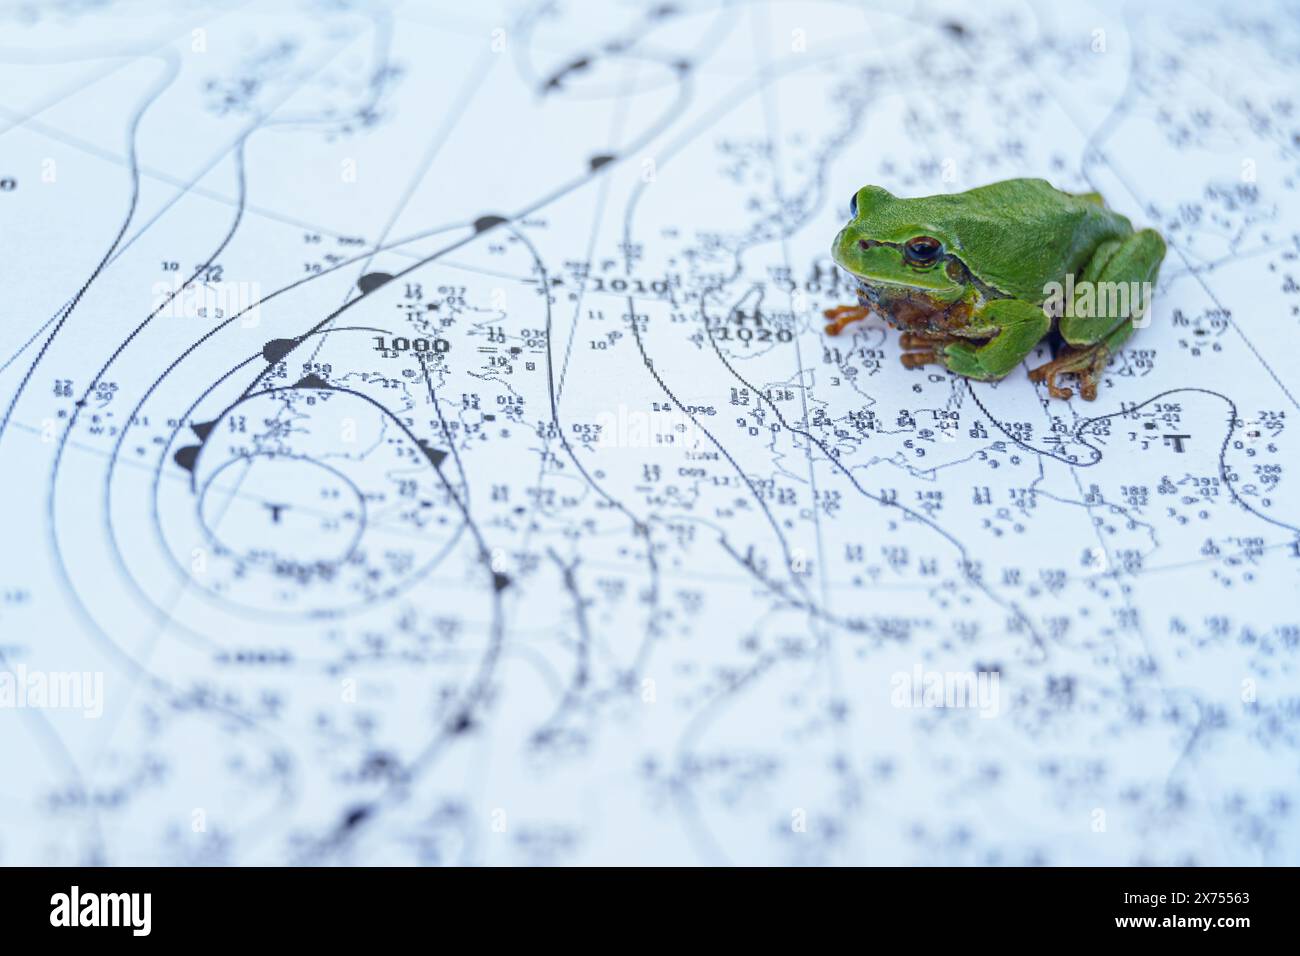 La rana europea (Hyla arborea) è una piccola rana. Foto Stock